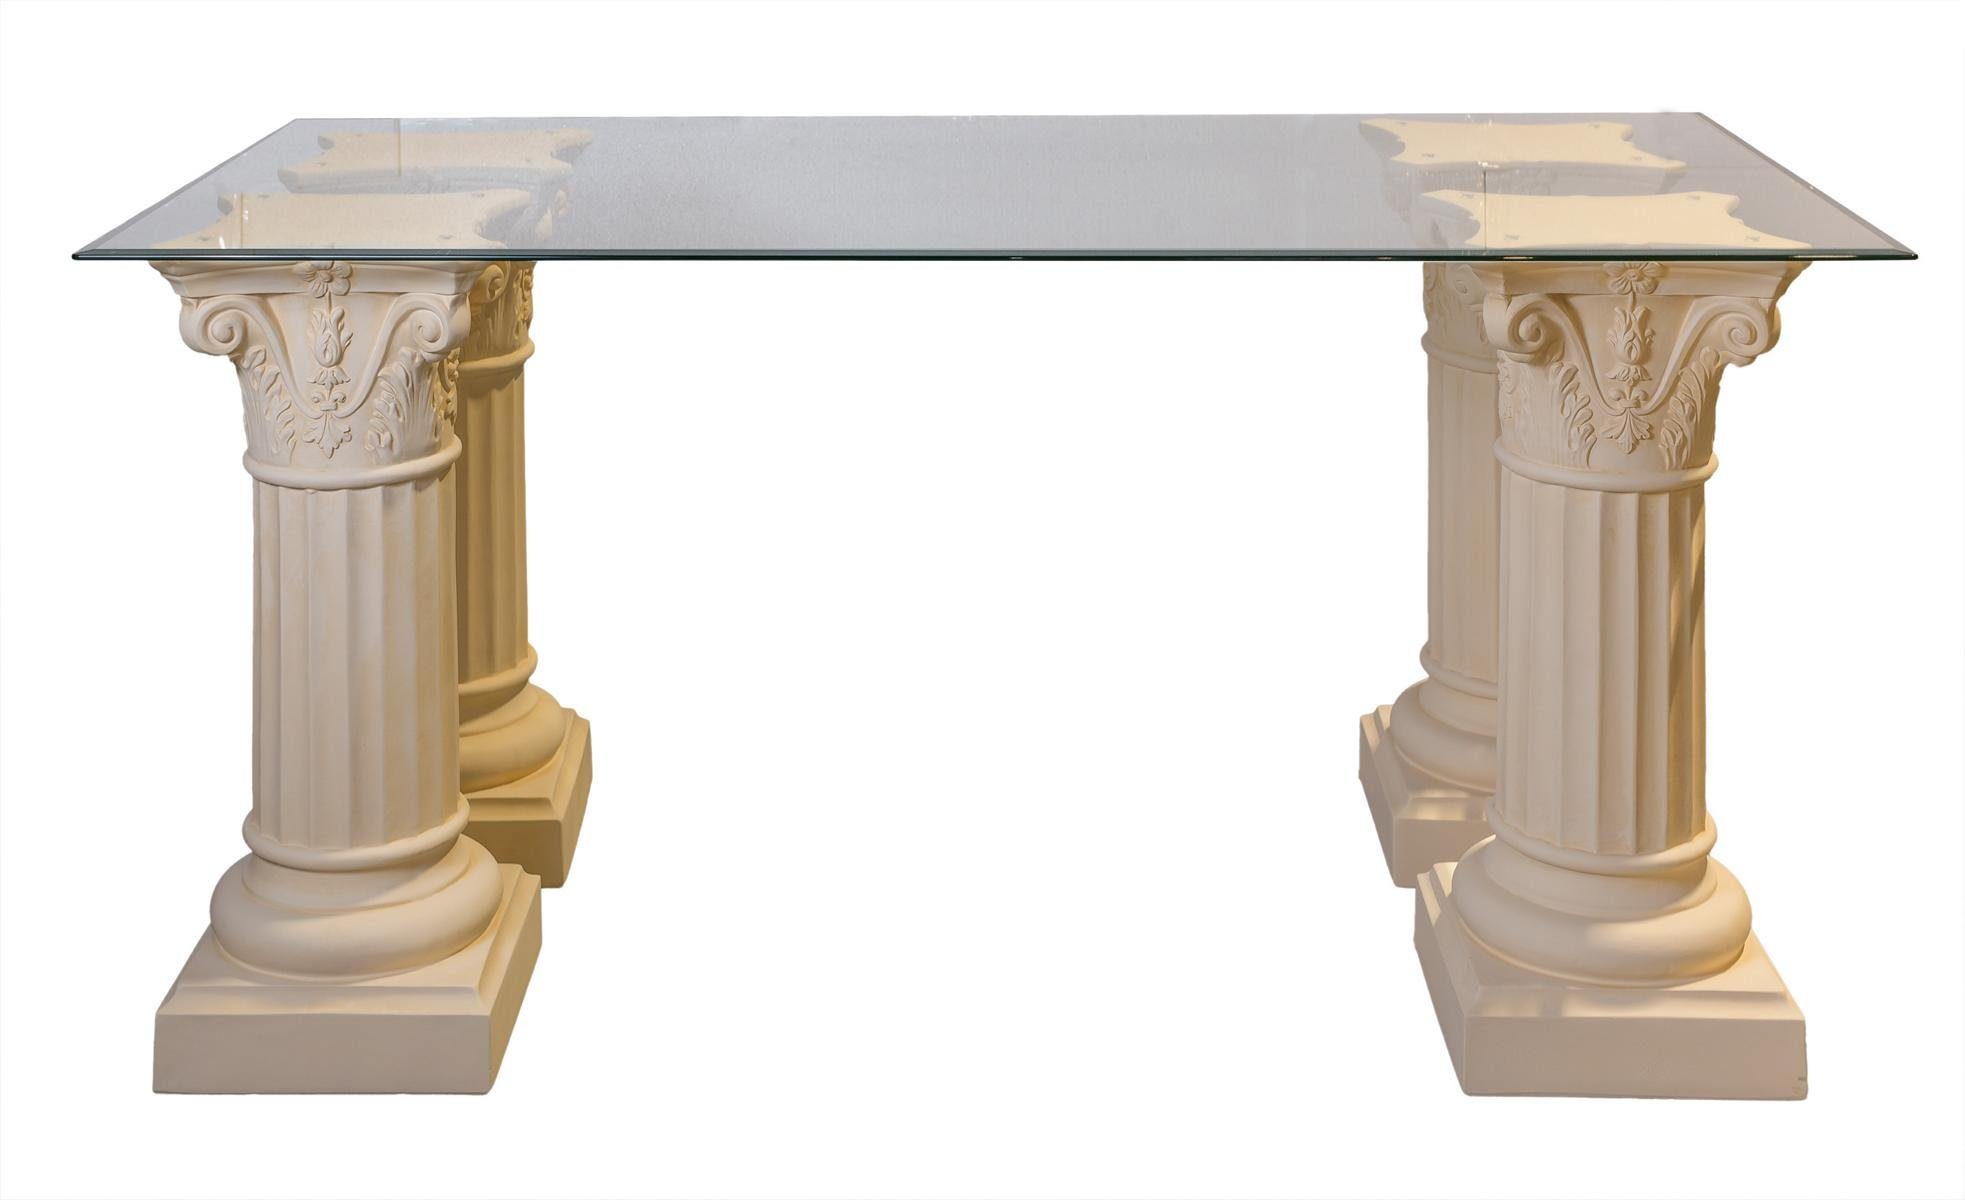 x Esstisch Säulentisch180cm / Säulen-Esstisch / Antikes Wohndesign 90cm Tafeltisch